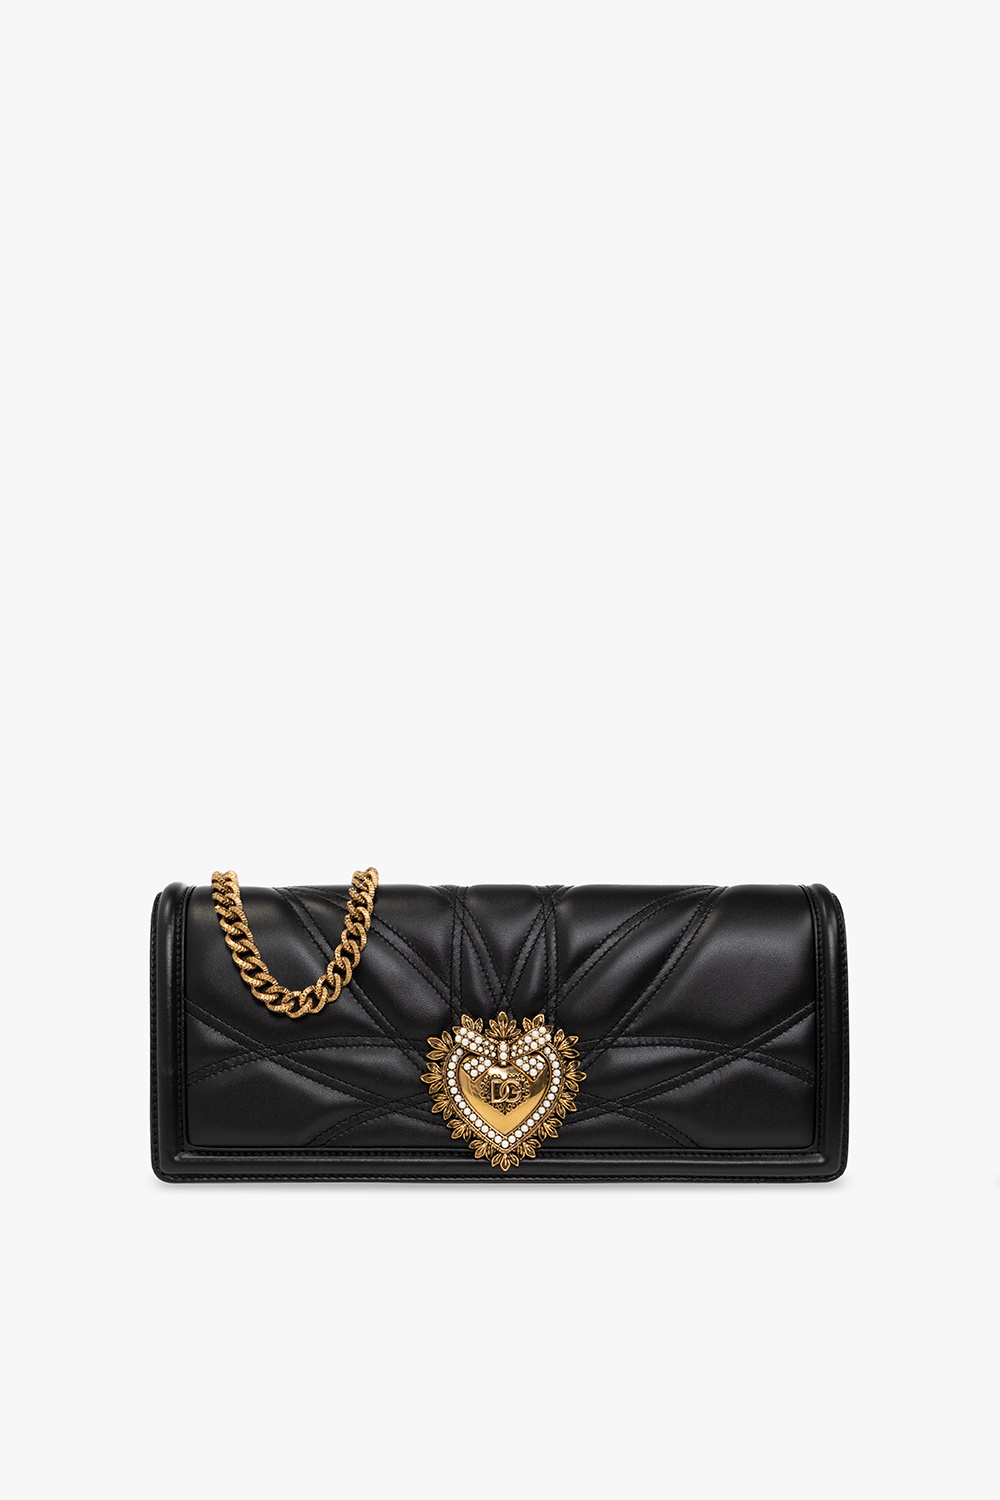 Dolce & Gabbana ‘Devotion‘ shoulder bag